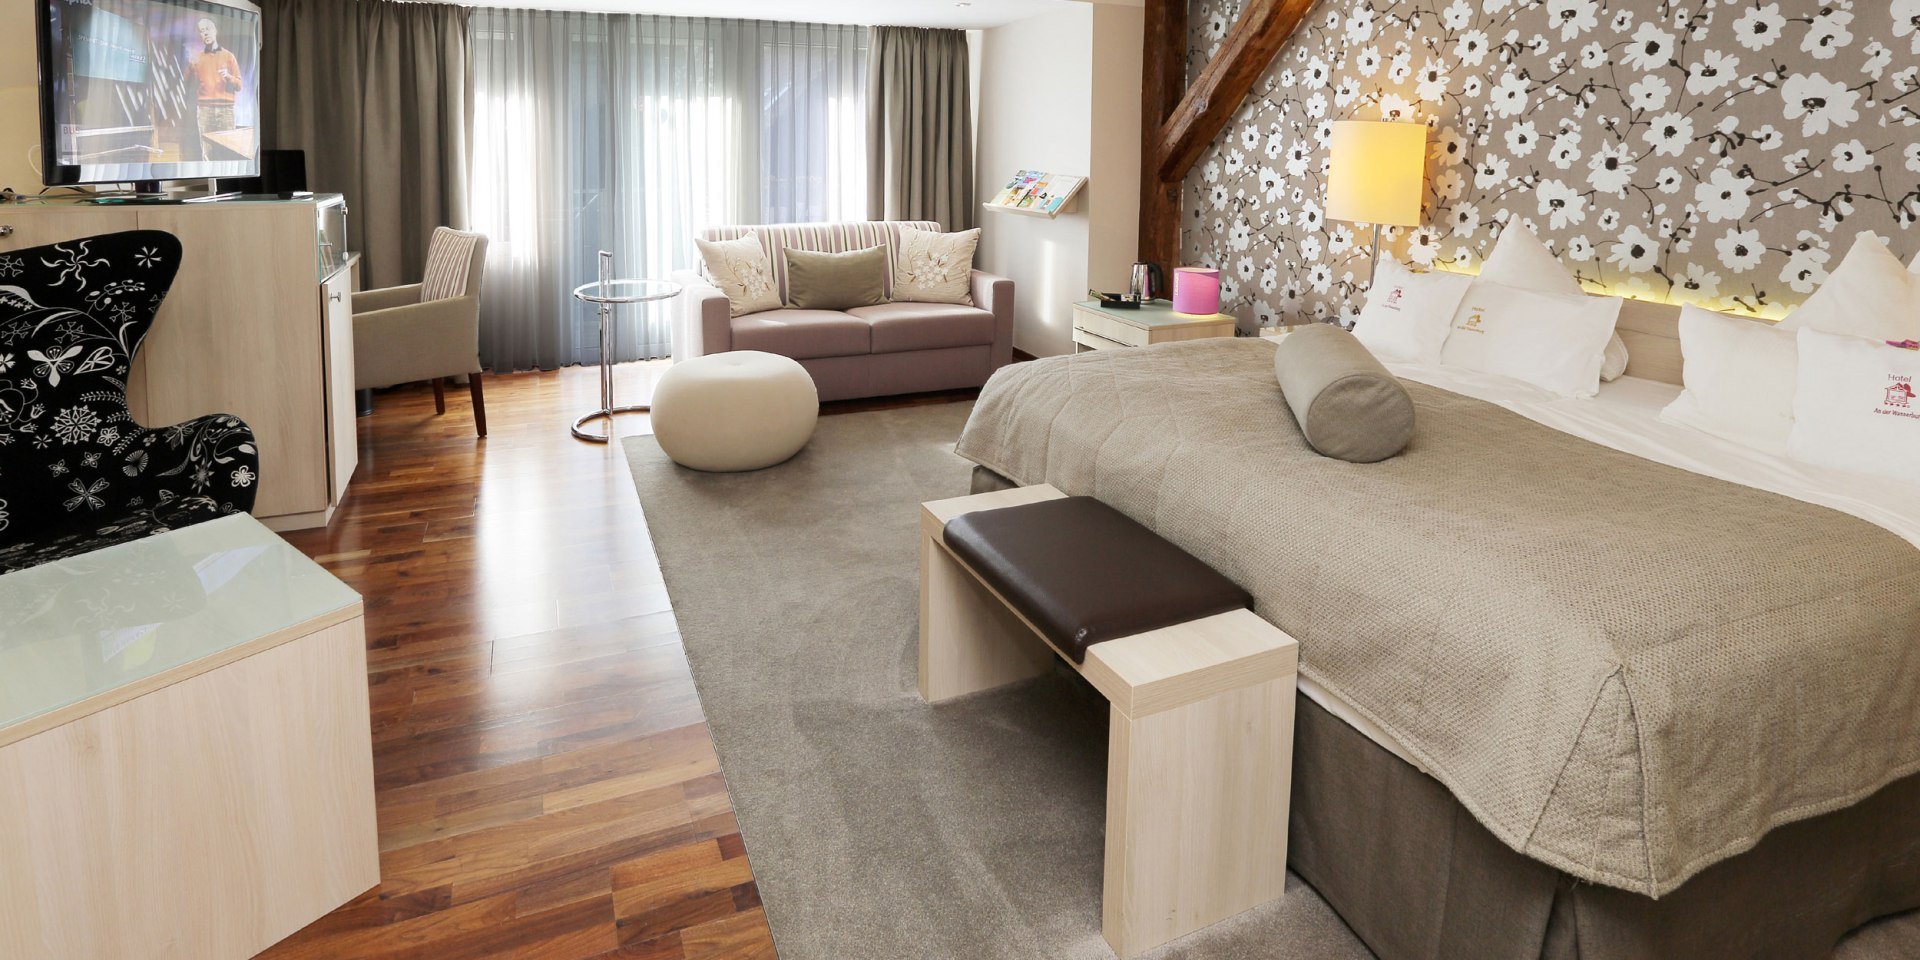 Einblick in ein Doppelzimmer im Hotel an der Wasserburg, © Hotel an der Wasserburg / Hackländer